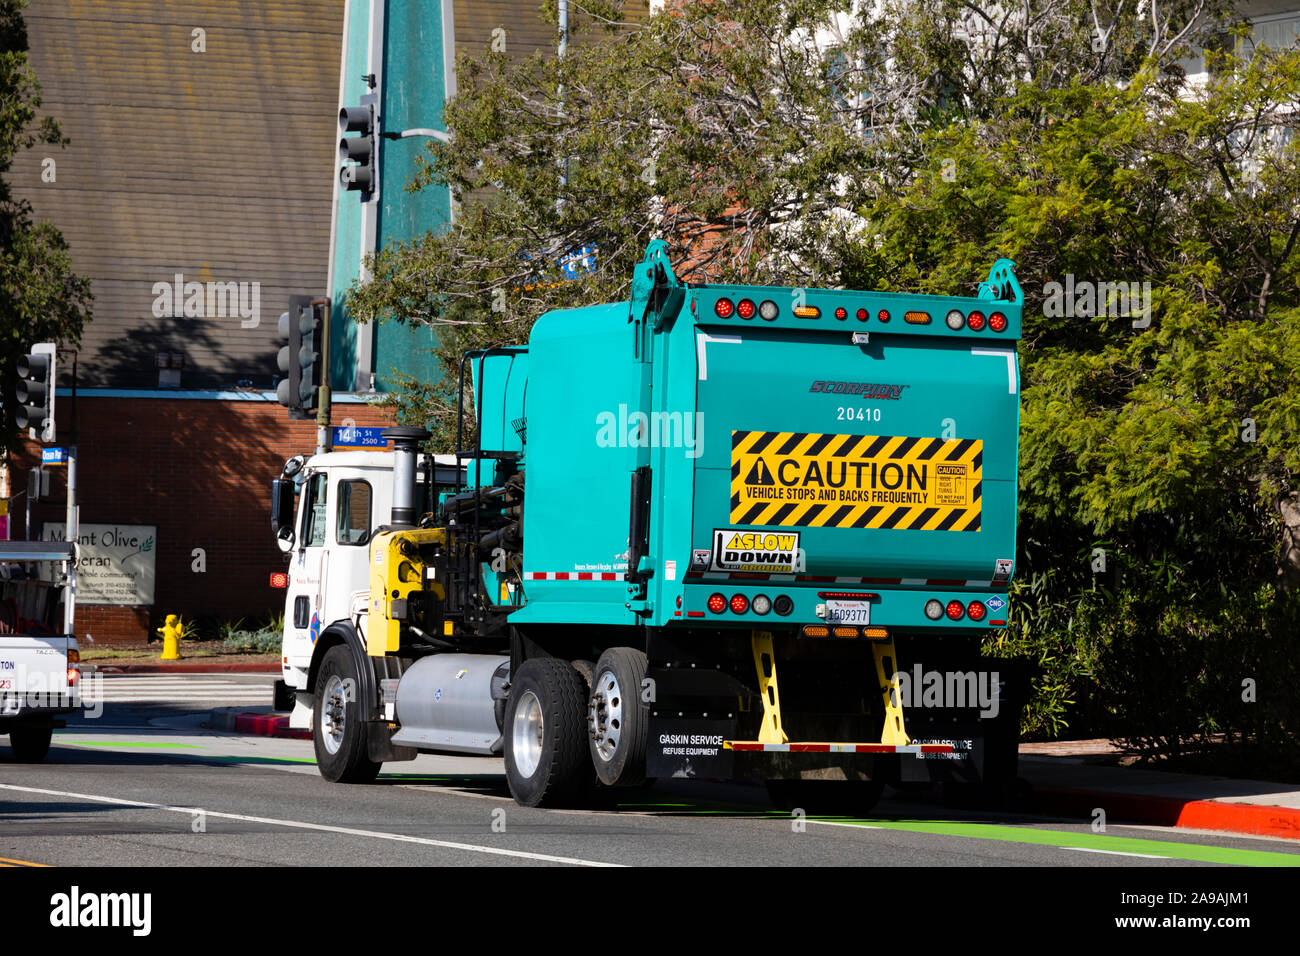 Automatische garbage collection Fahrzeug bei der Arbeit, Ocean Park Boulevard, Santa Monica, Kalifornien, Vereinigte Staaten von Amerika. USA Stockfoto